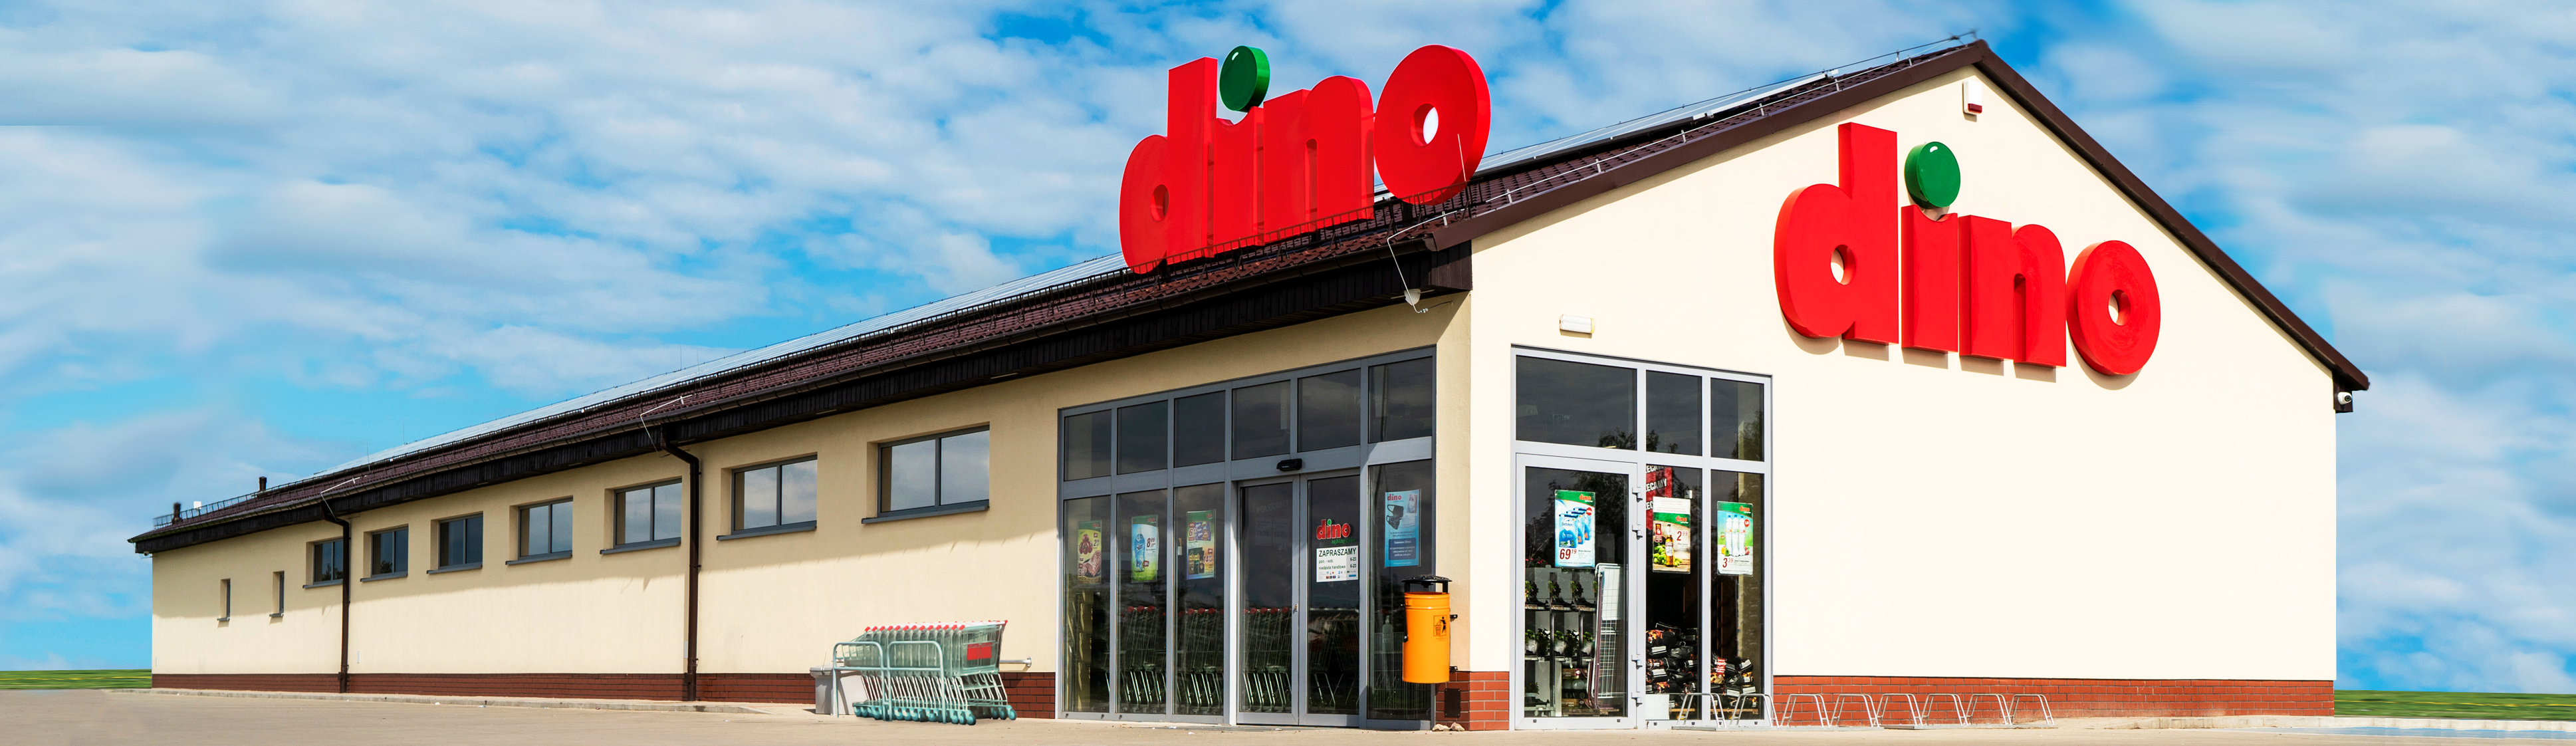 256 nowych sklepów Dino otwartych od początku 2022 r.